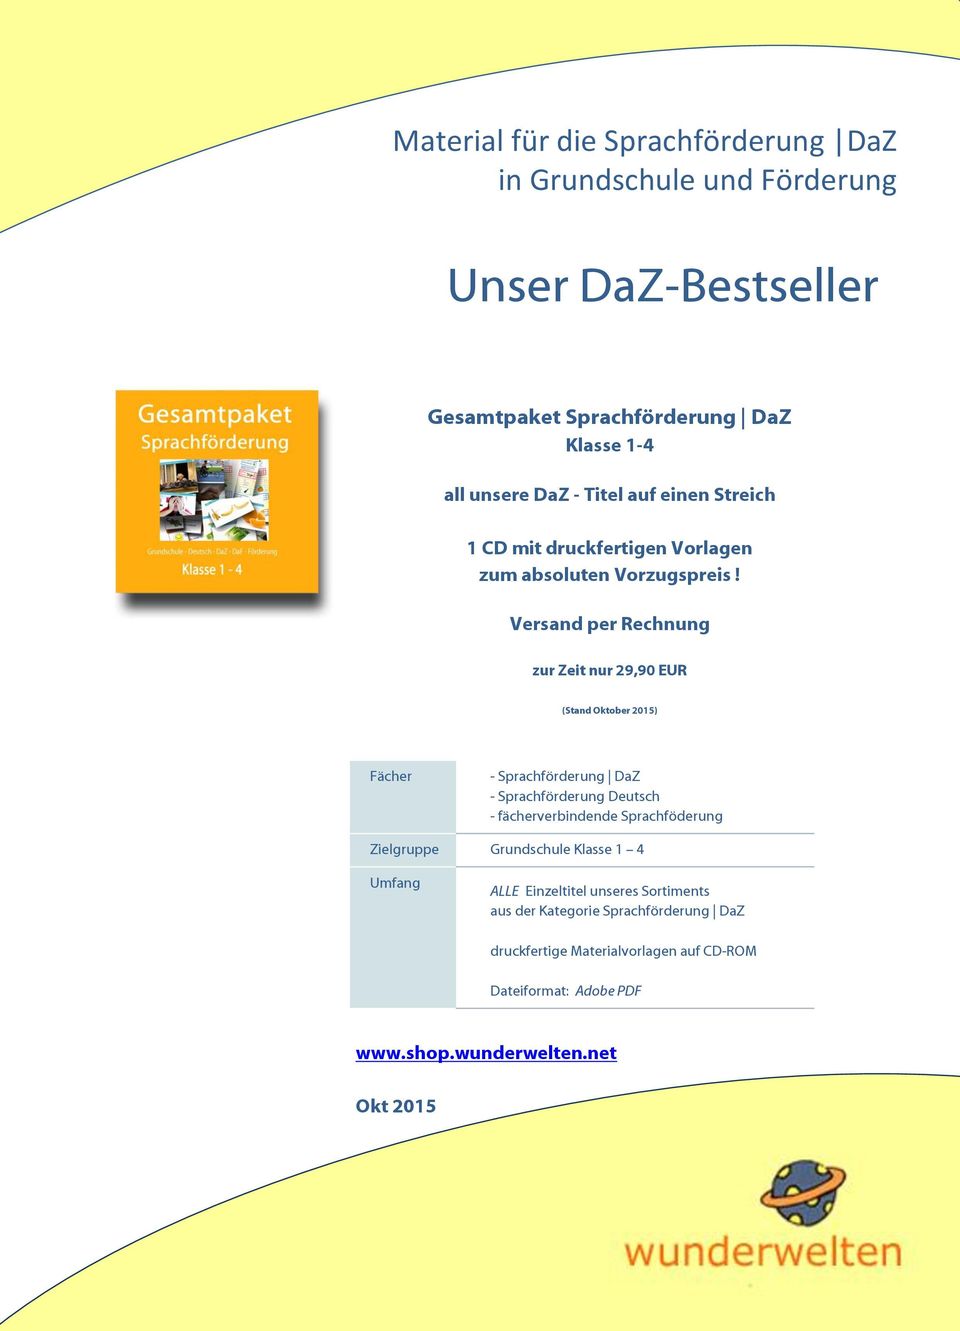 Versand per Rechnung zur Zeit nur 29,90 EUR (Stand Oktober 2015) Fächer - Sprachförderung DaZ - Sprachförderung Deutsch - fächerverbindende